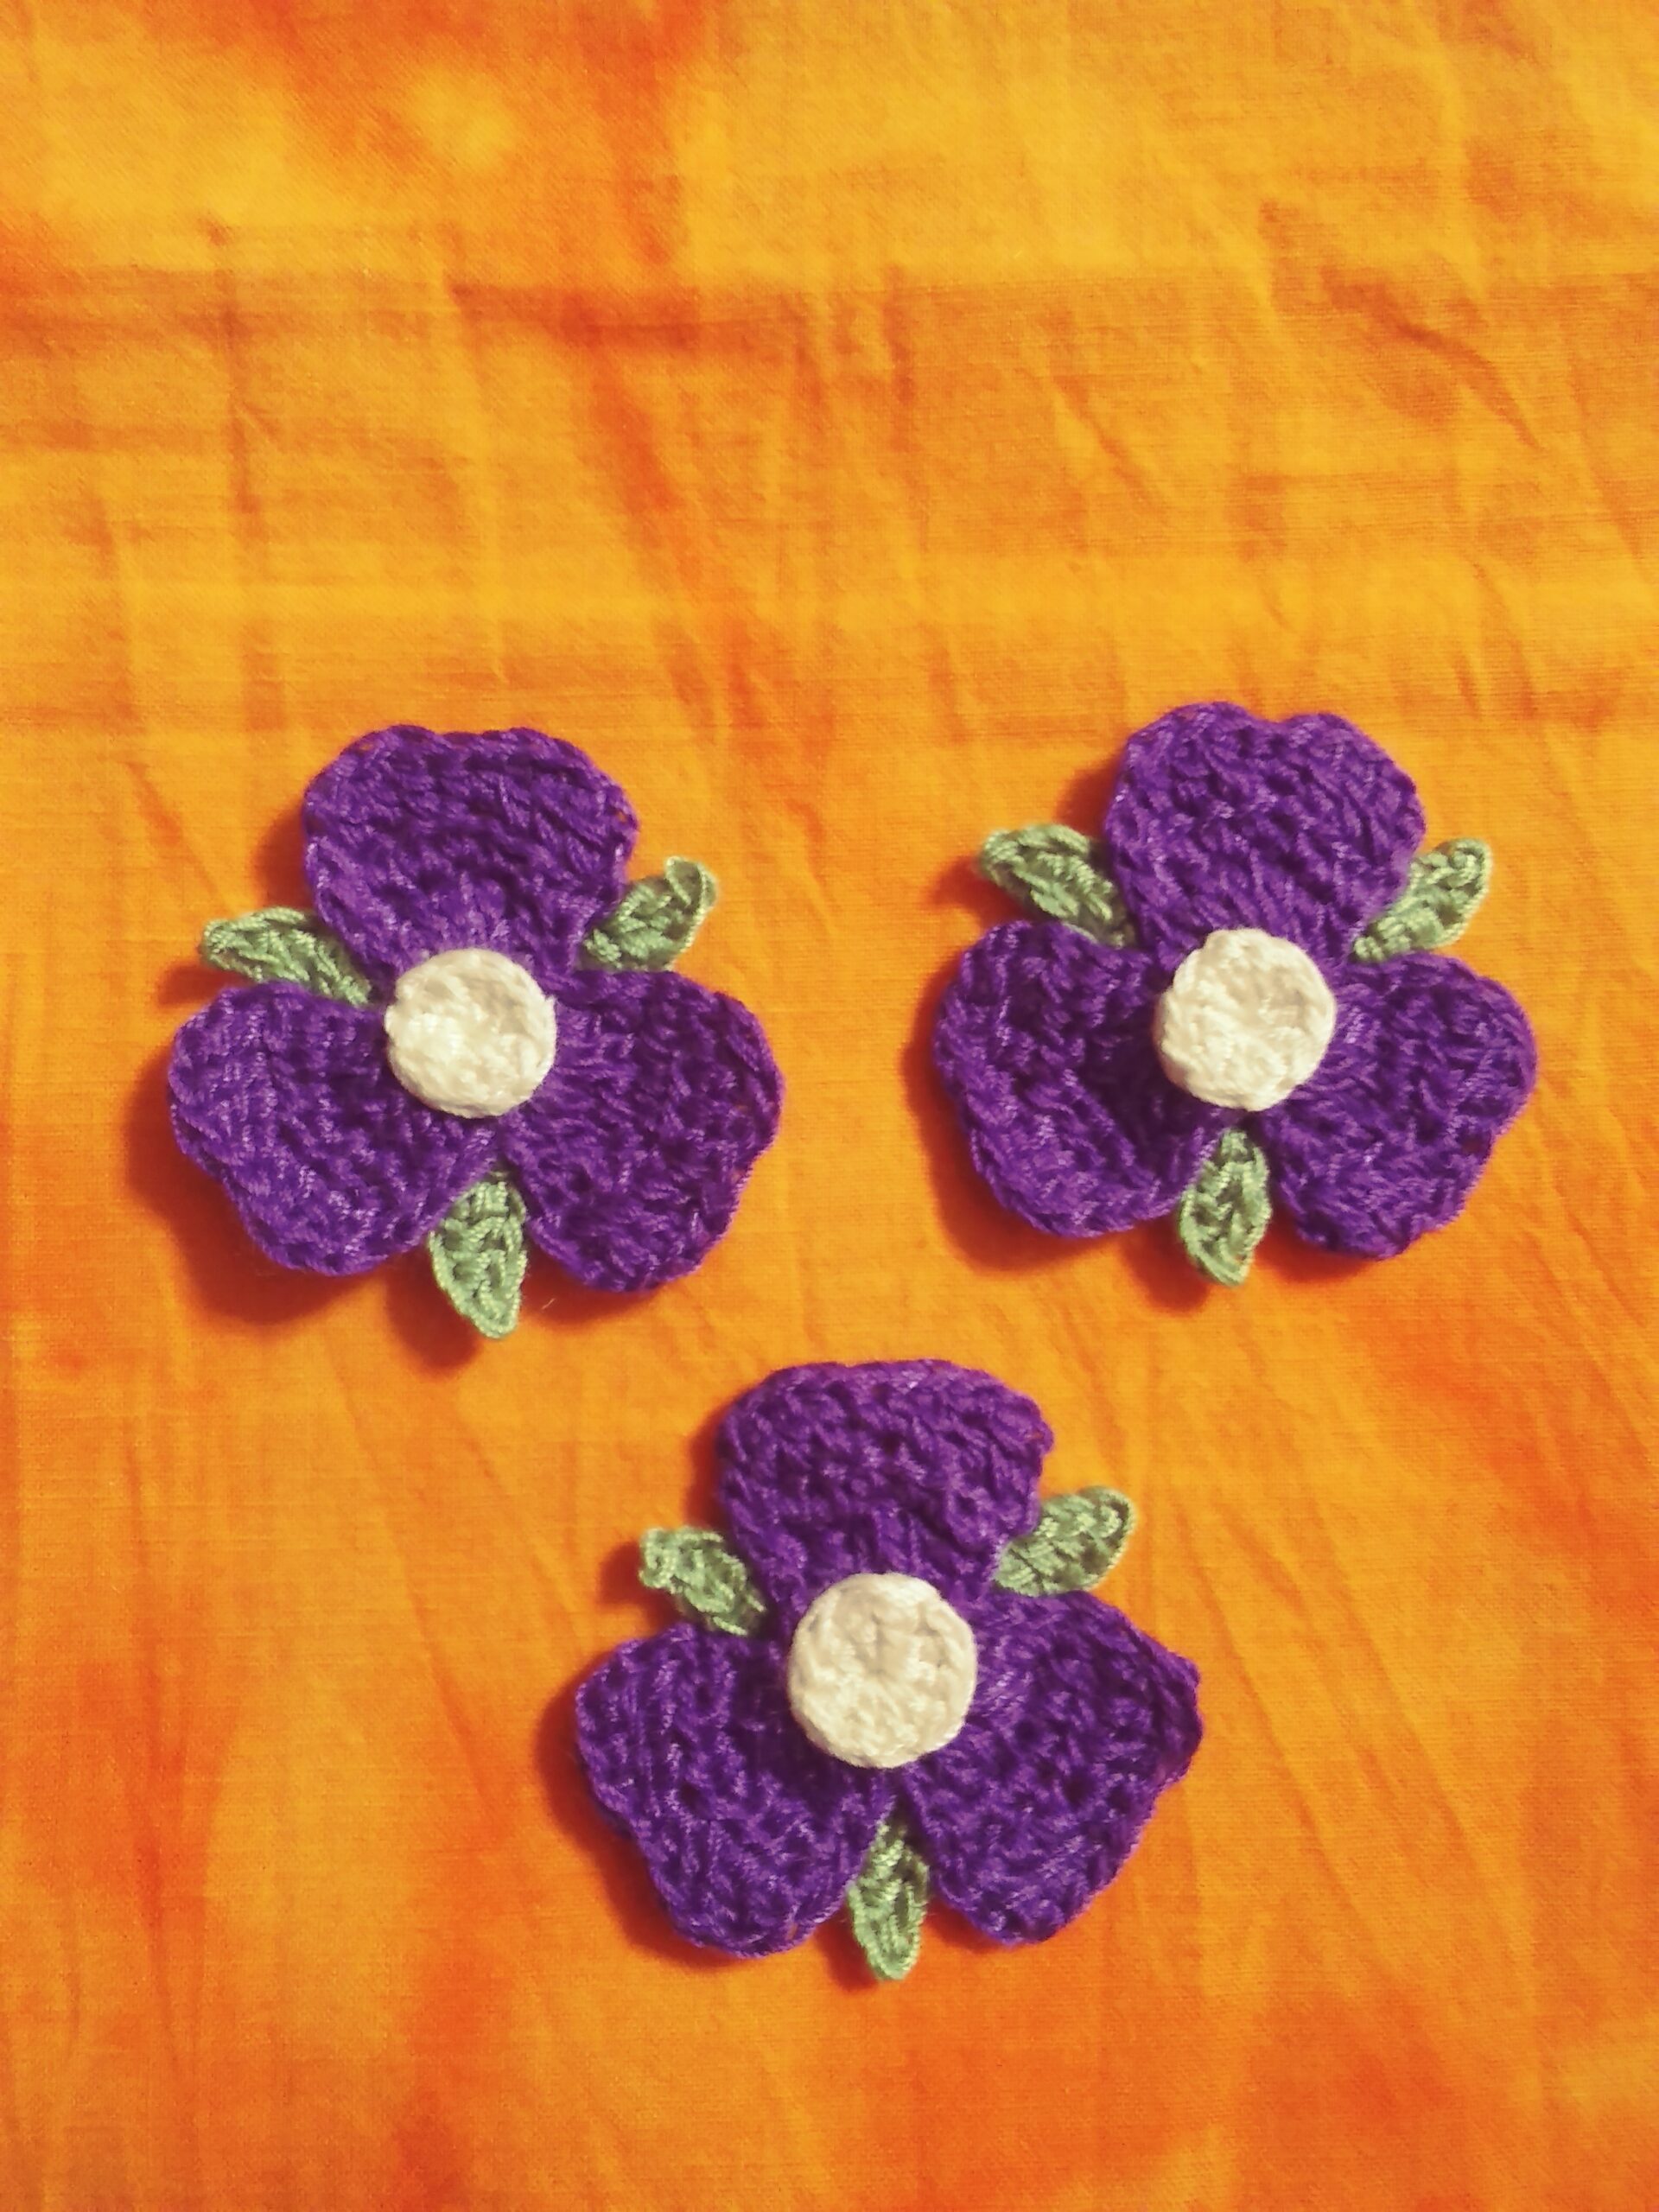 APP-G-033T – Turquoise/White Crochet Flower Applique – Set of 3